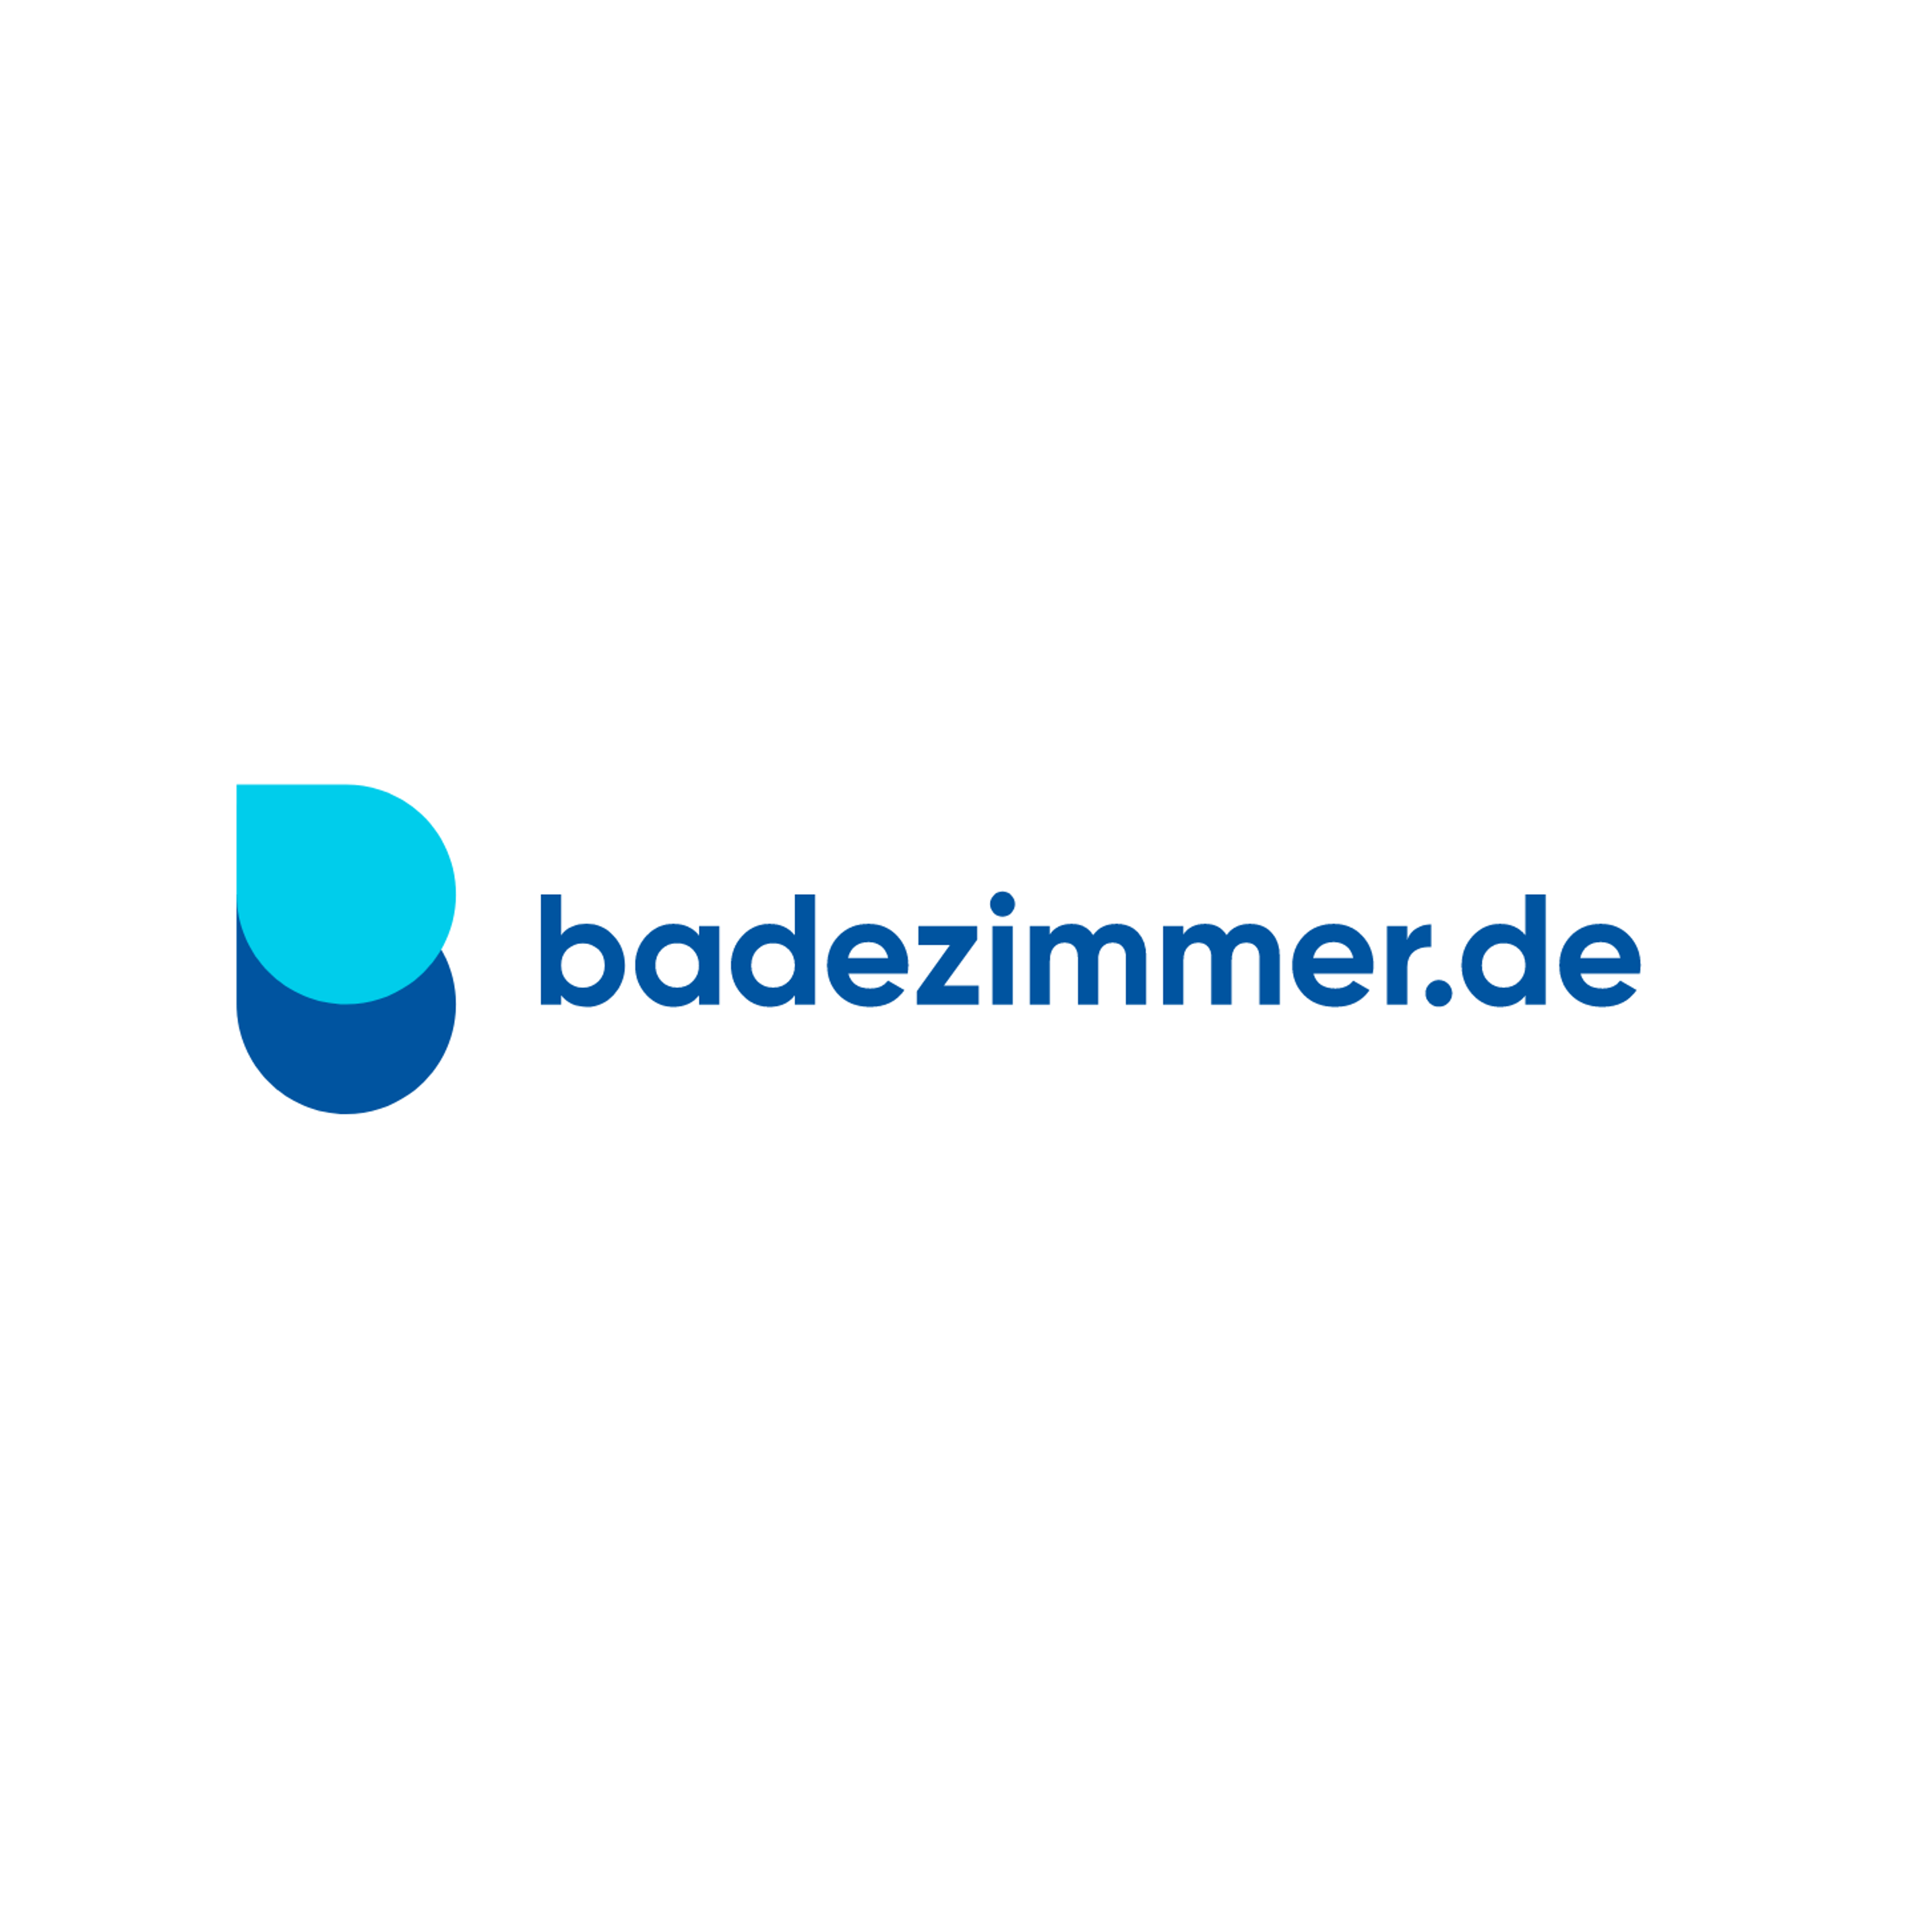 badezimmer.de Badausstellung Gelsenkirchen - ELMER in Gelsenkirchen - Logo